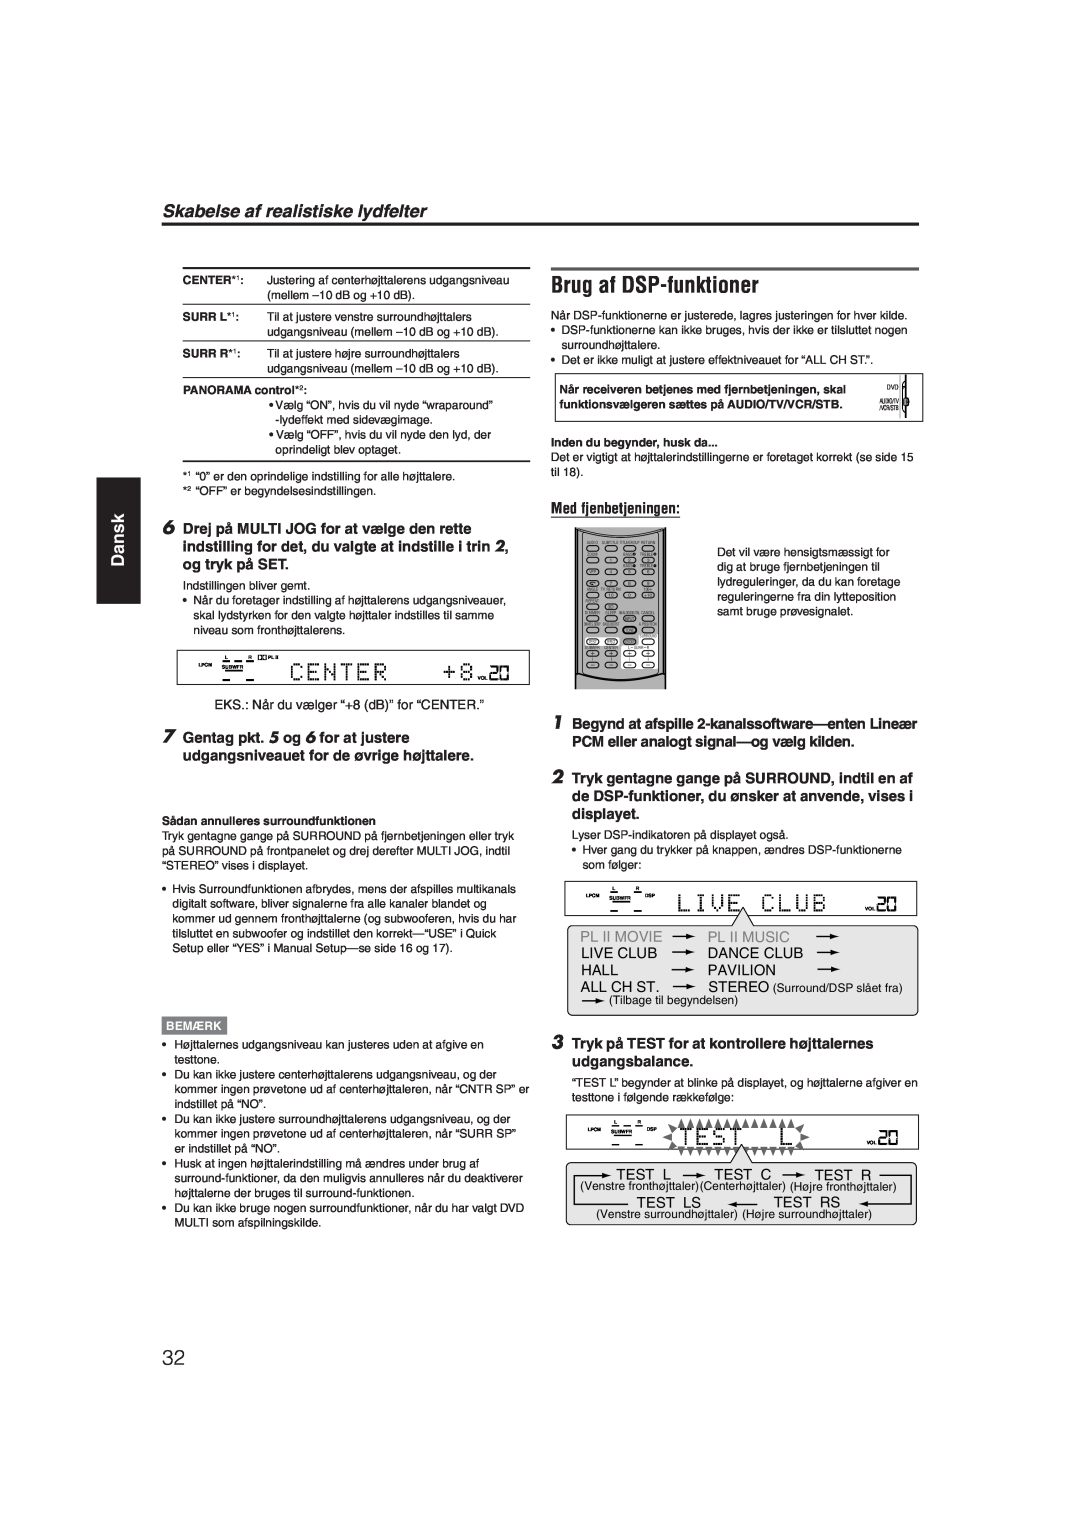 JVC RX-ES1SL manual Brug af DSP-funktioner, Skabelse af realistiske lydfelter, Dansk, Med fjenbetjeningen 